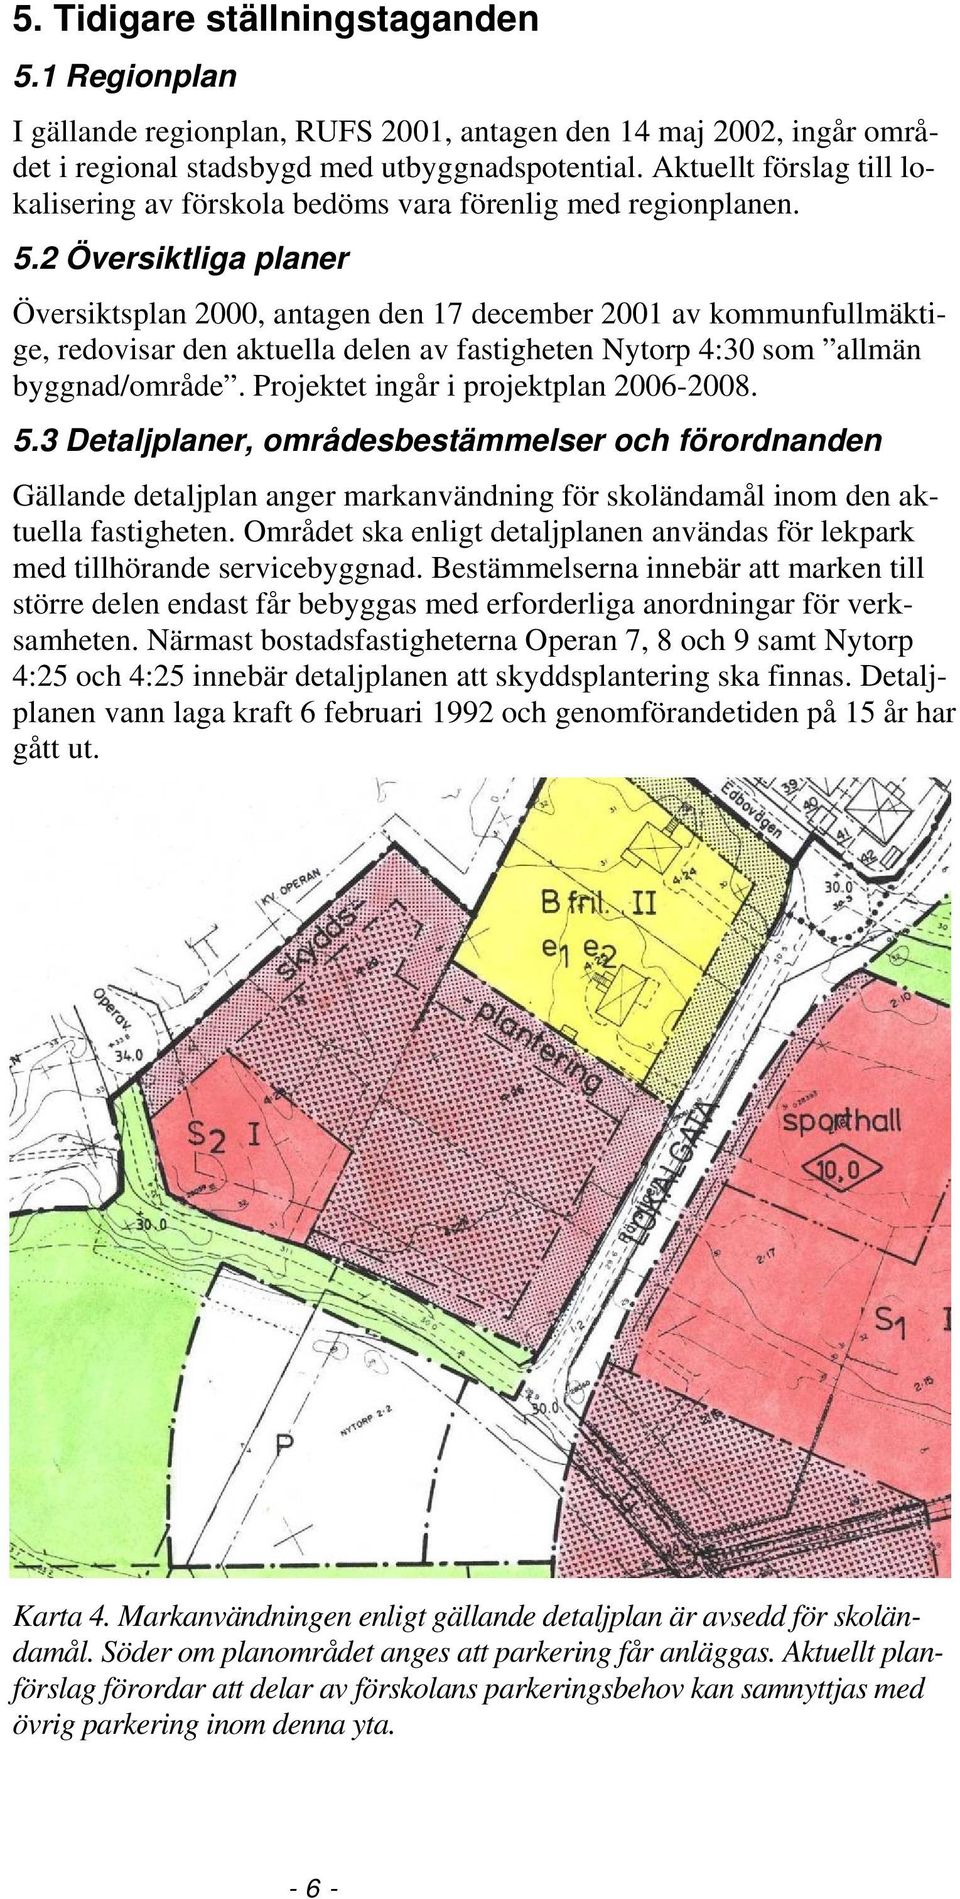 2 Översiktliga planer Översiktsplan 2000, antagen den 17 december 2001 av kommunfullmäktige, redovisar den aktuella delen av fastigheten Nytorp 4:30 som allmän byggnad/område.